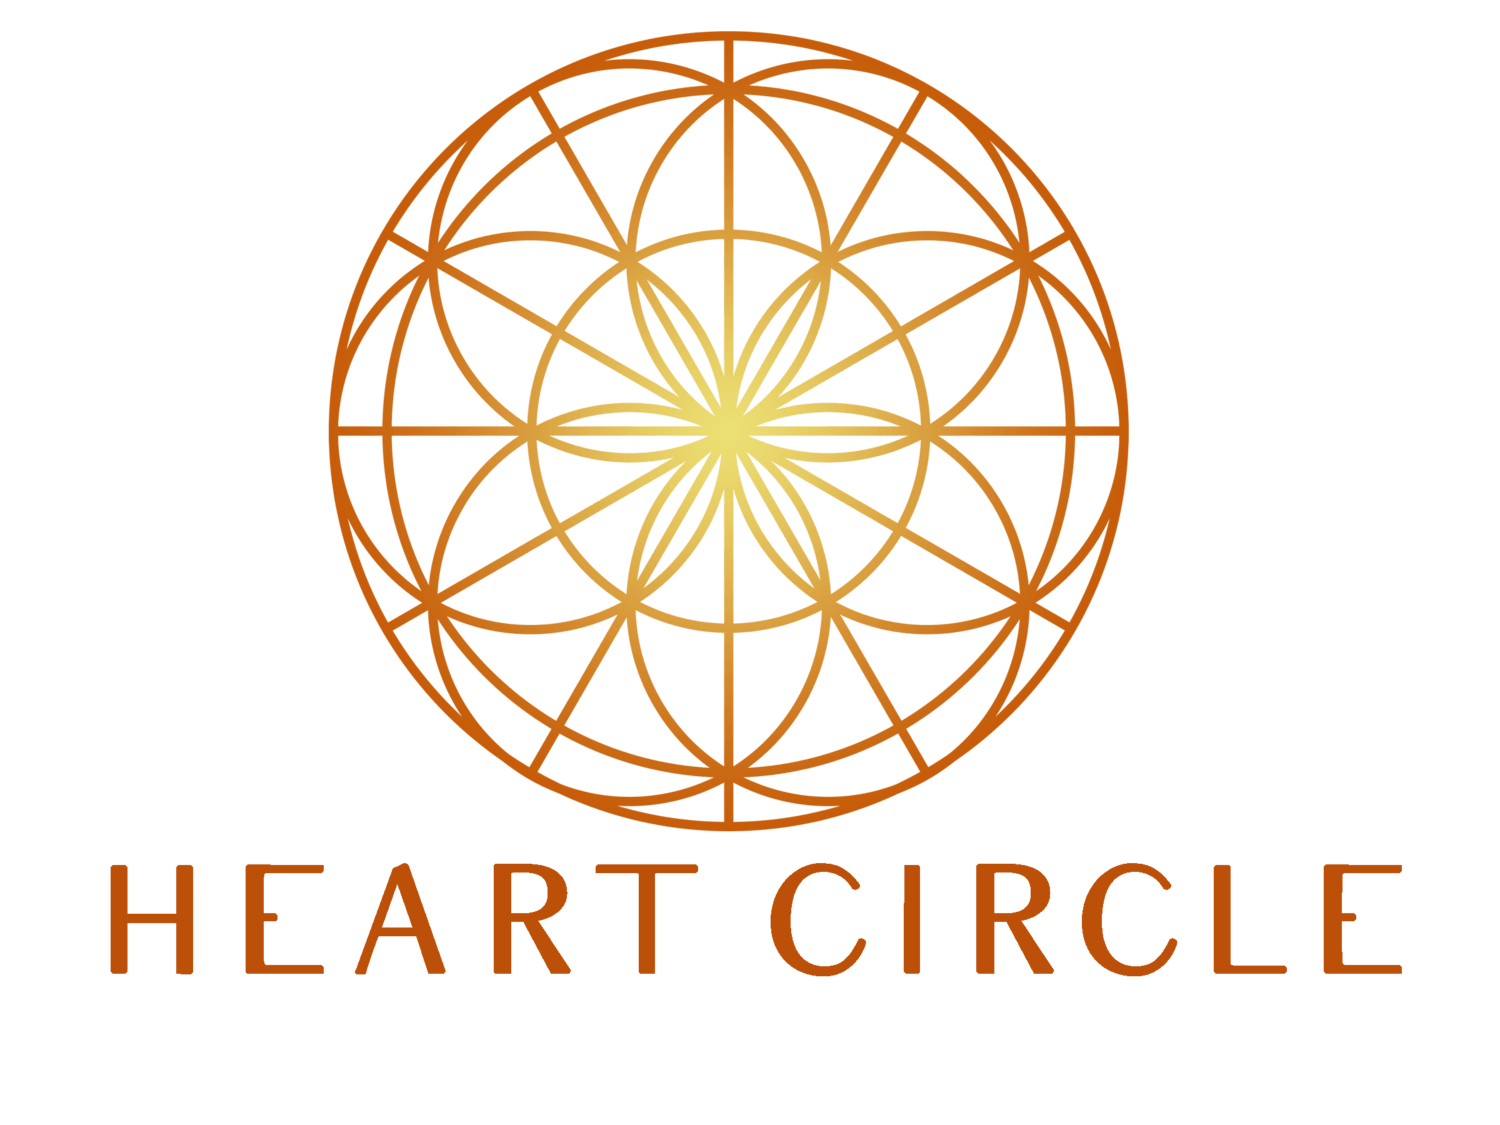 Circle Heart Logo - Heart Circle